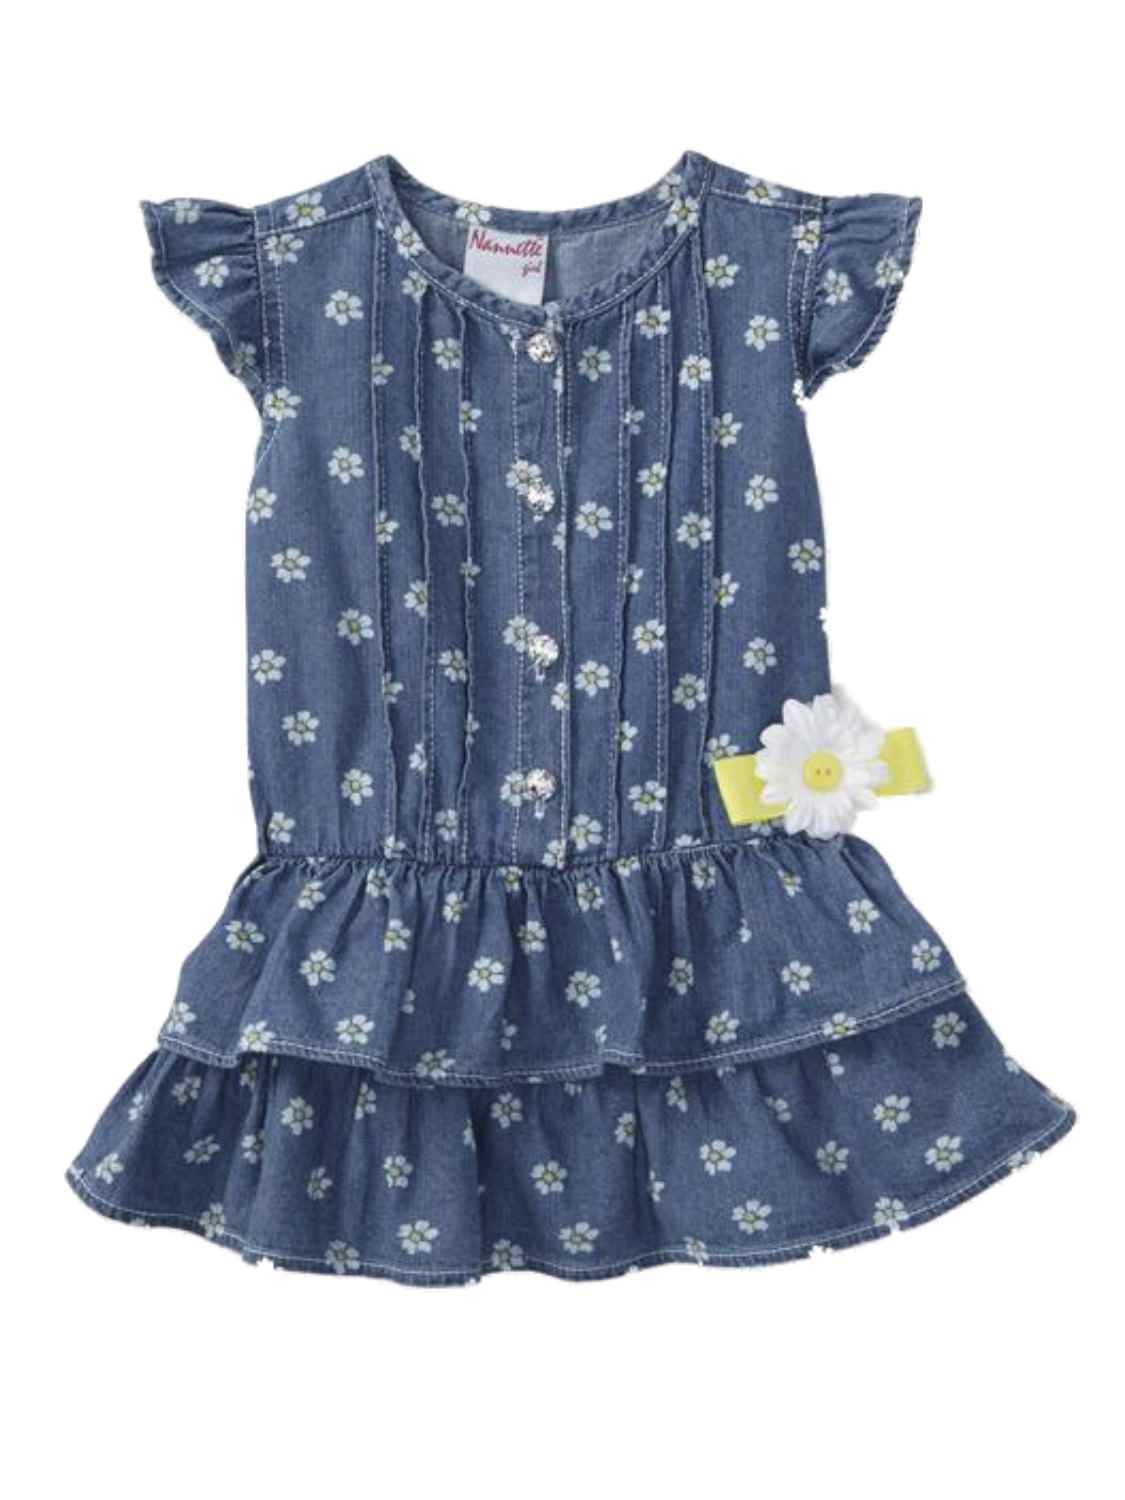 Nannette Toddler Girls Daisy Flower Chambray Dress Short Sleeve Denim Dress